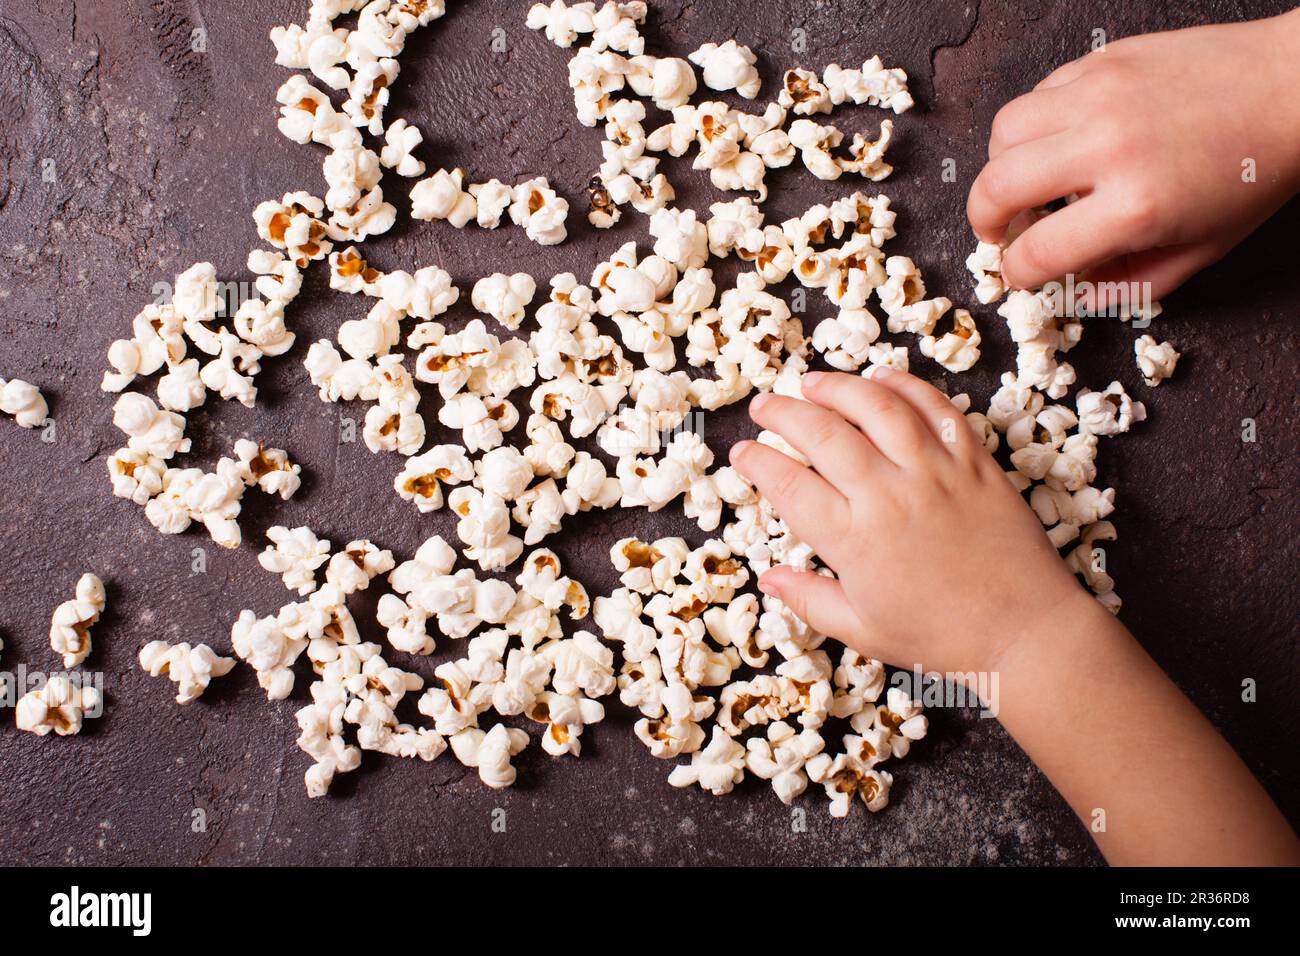 Children's hand holds popcorn Stock Photo